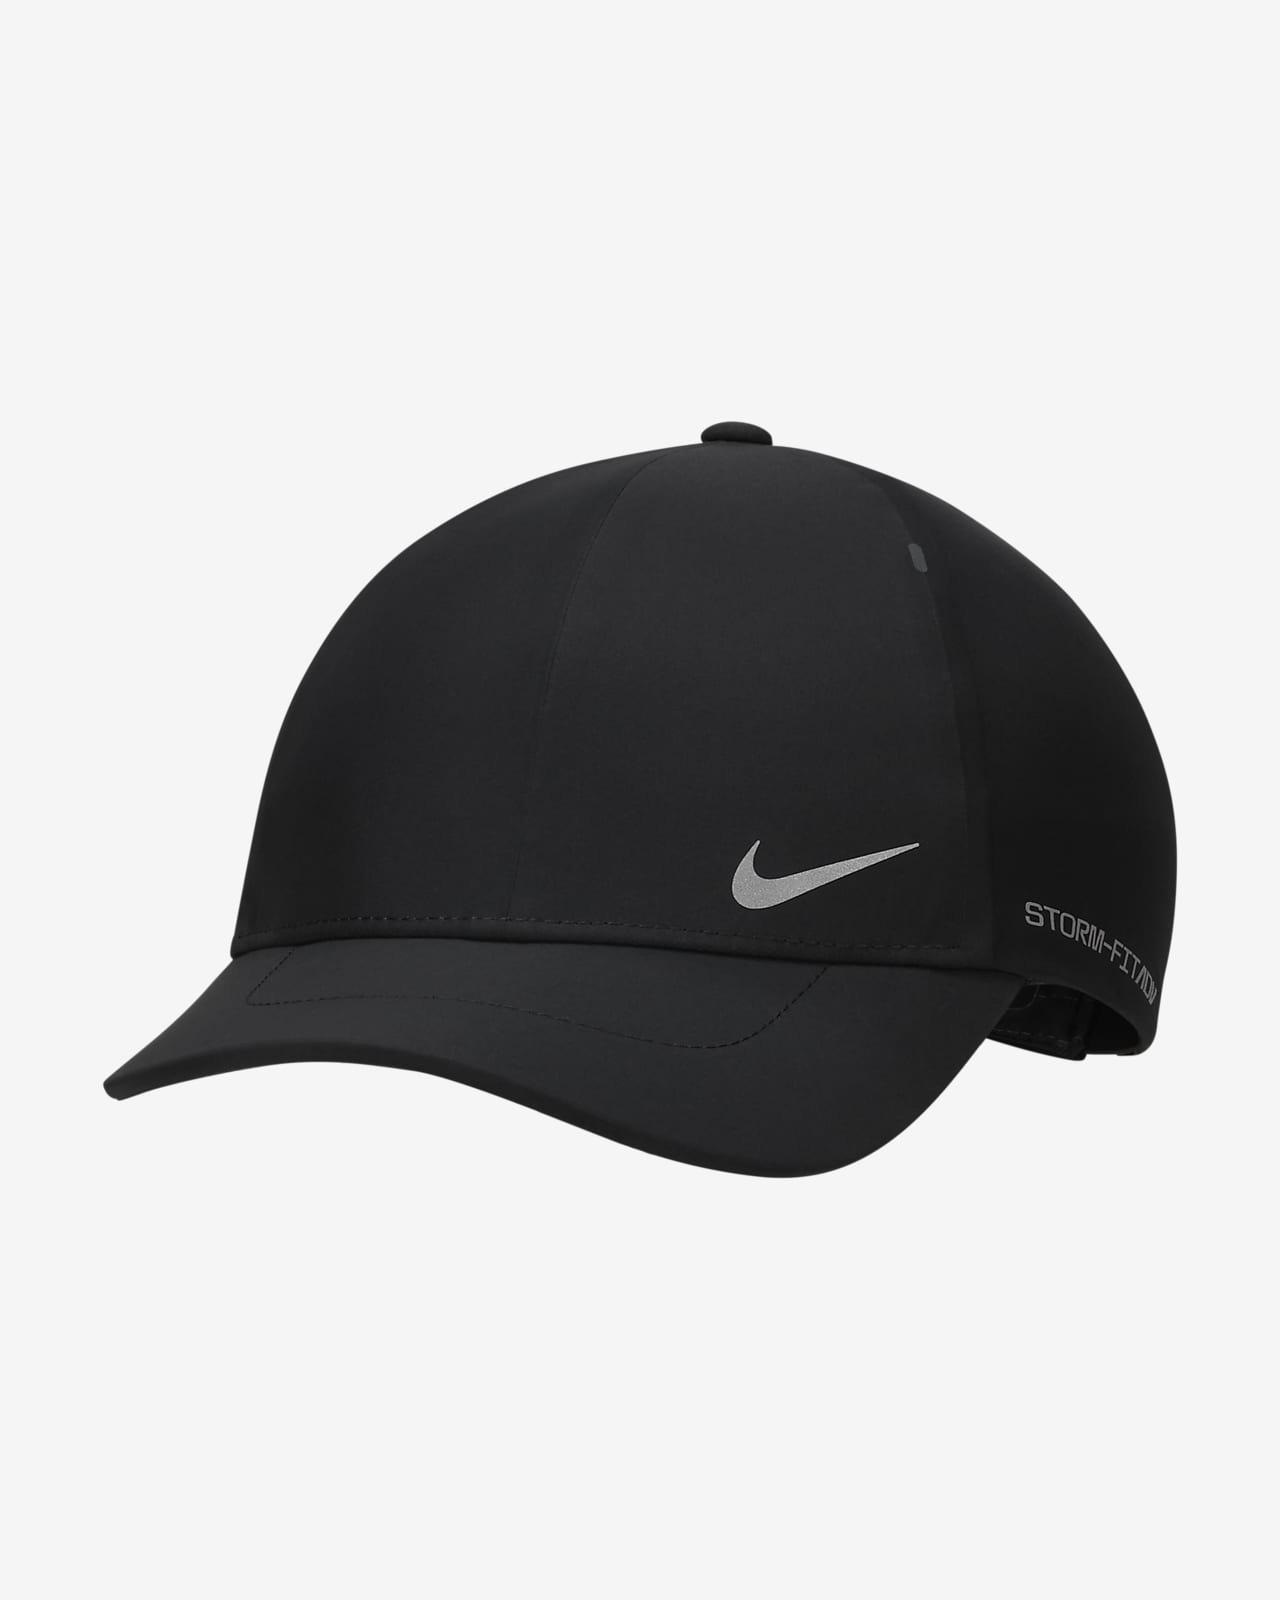 STORM HAT - Black – Cross Sportswear Intl